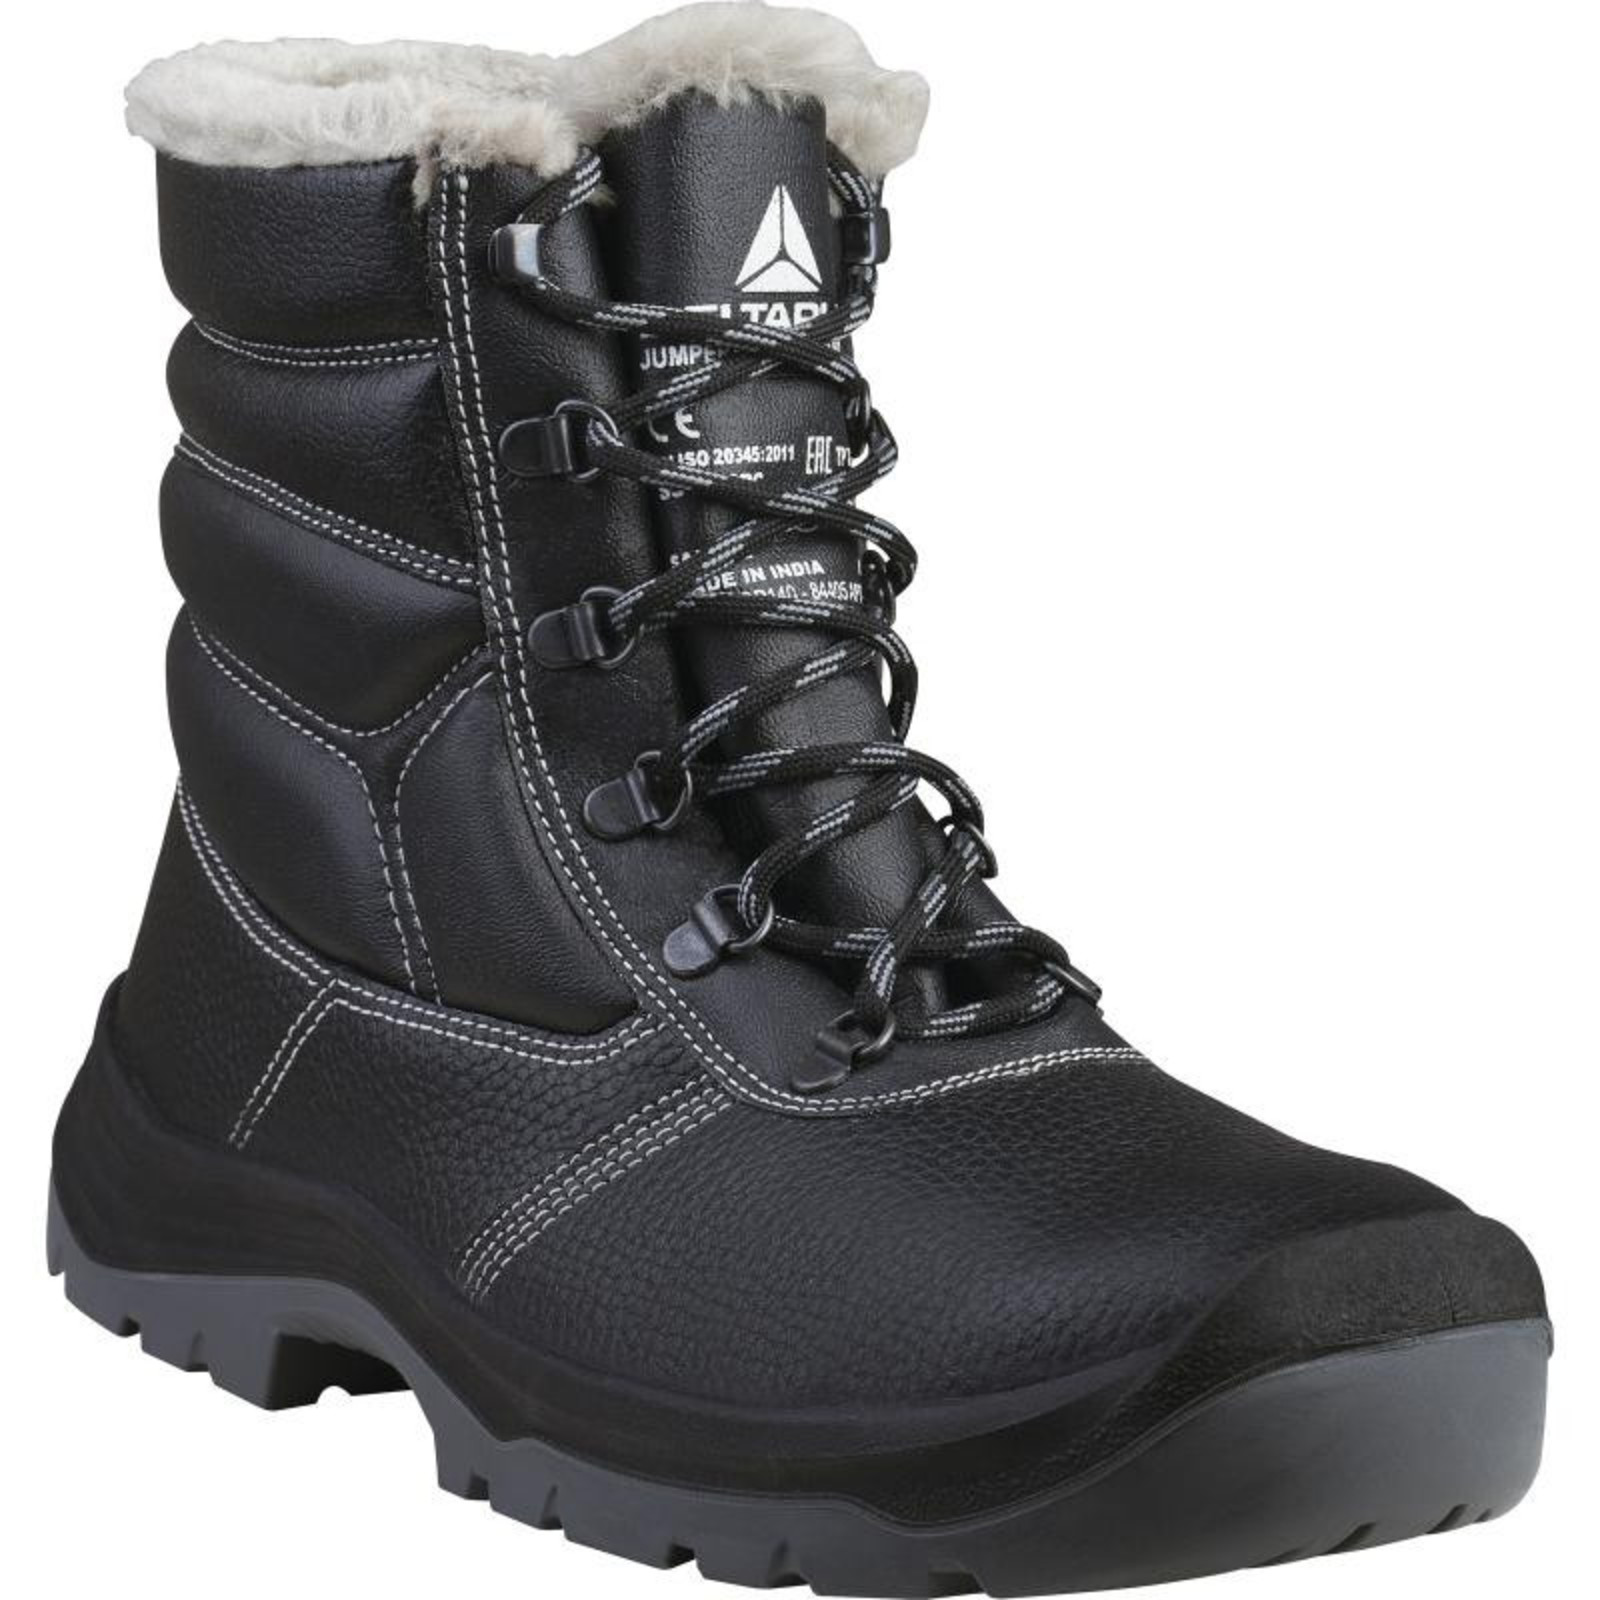 Zimná bezpečnostná obuv Delta Plus Jumper3 S3  - veľkosť: 37, farba: čierna